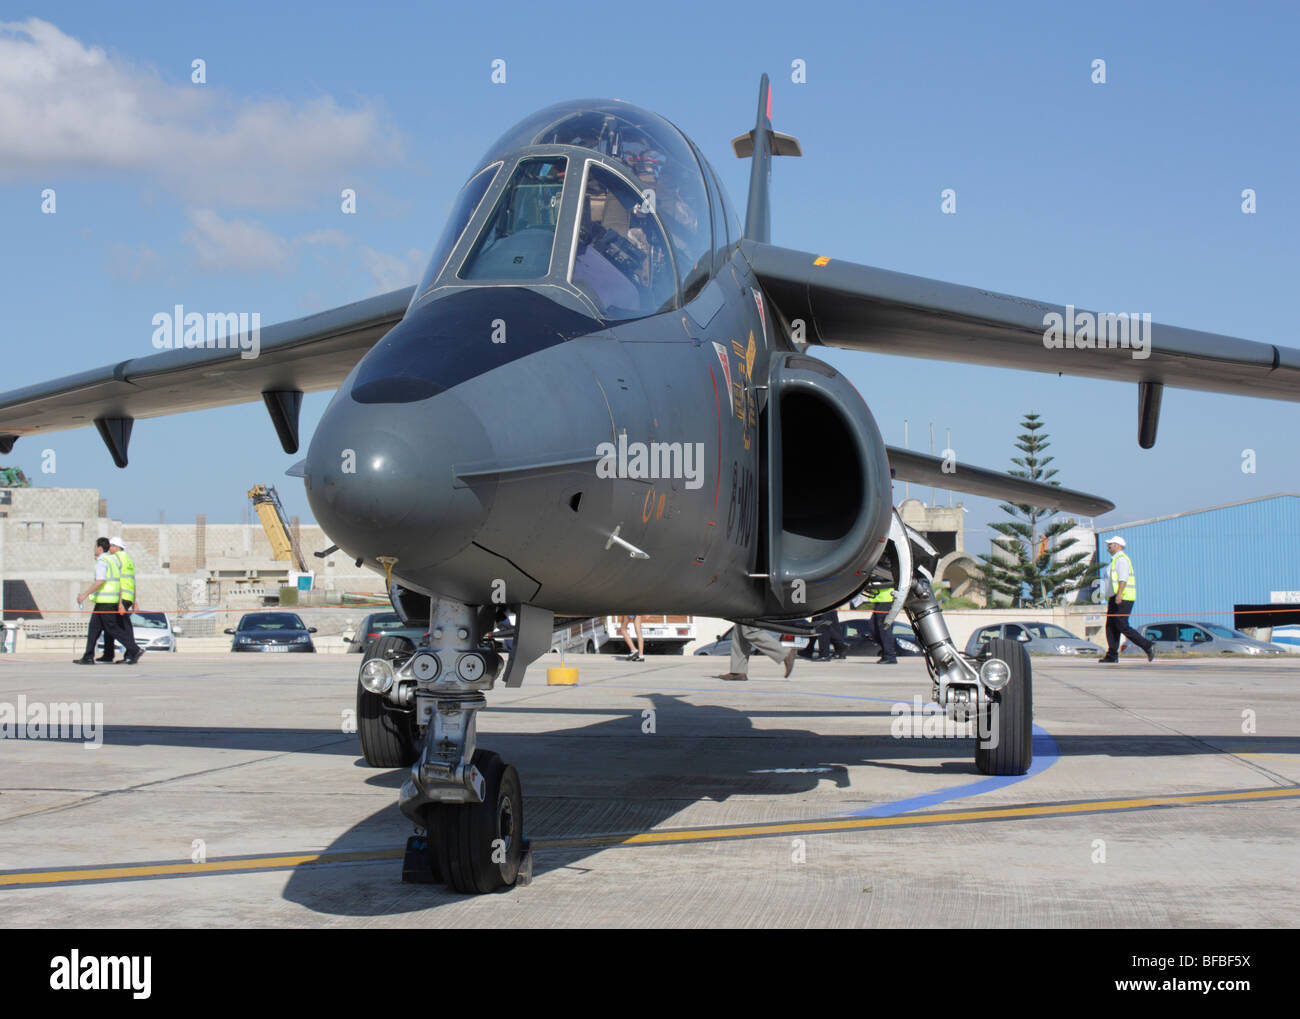 Die französische Air Force Alpha Jet militärische Ausbildung Flugzeug auf dem Airport apron geparkt Stockfoto